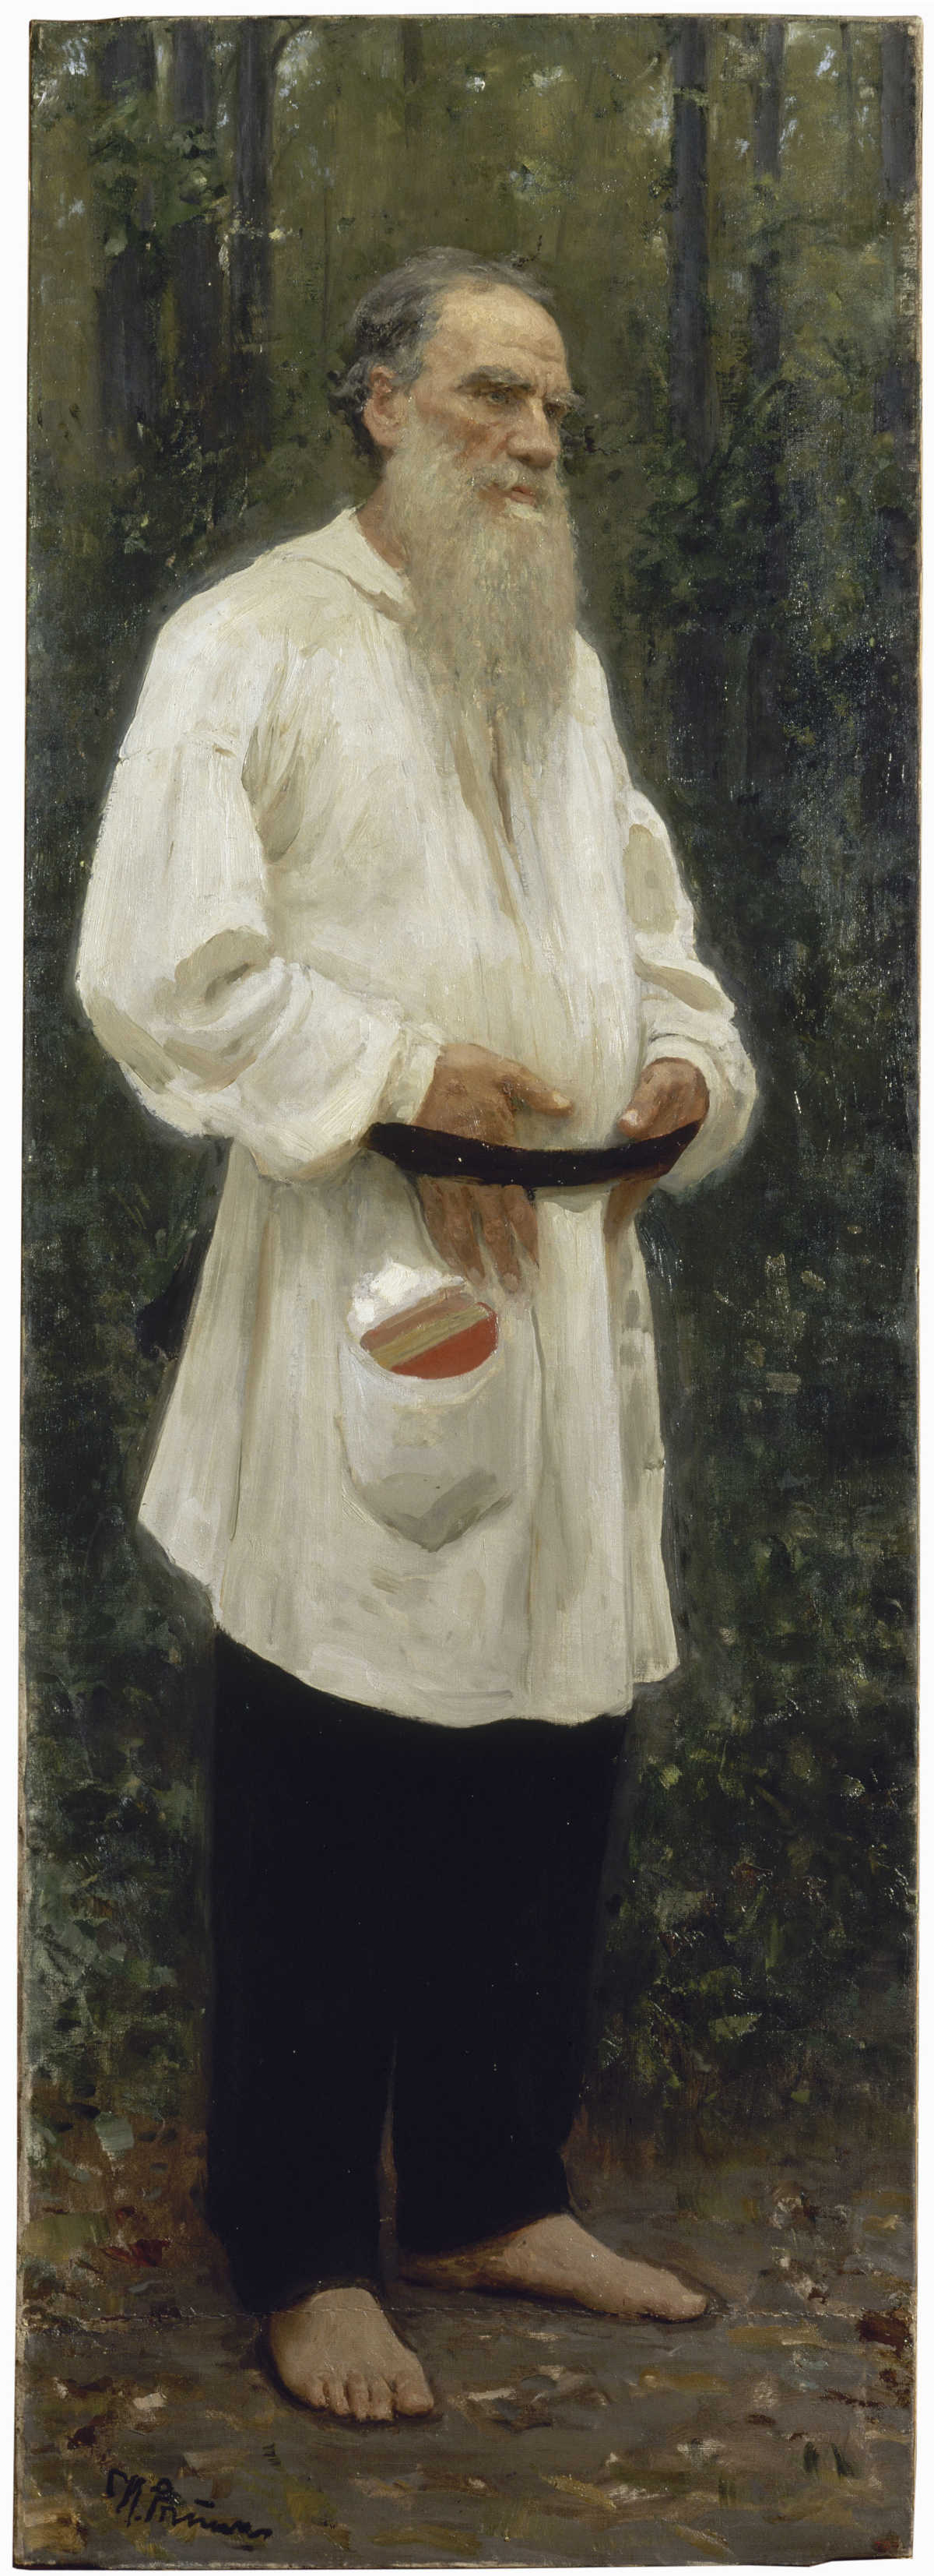 I.Repin, 1901, Museo Ruso de San Petersburgo